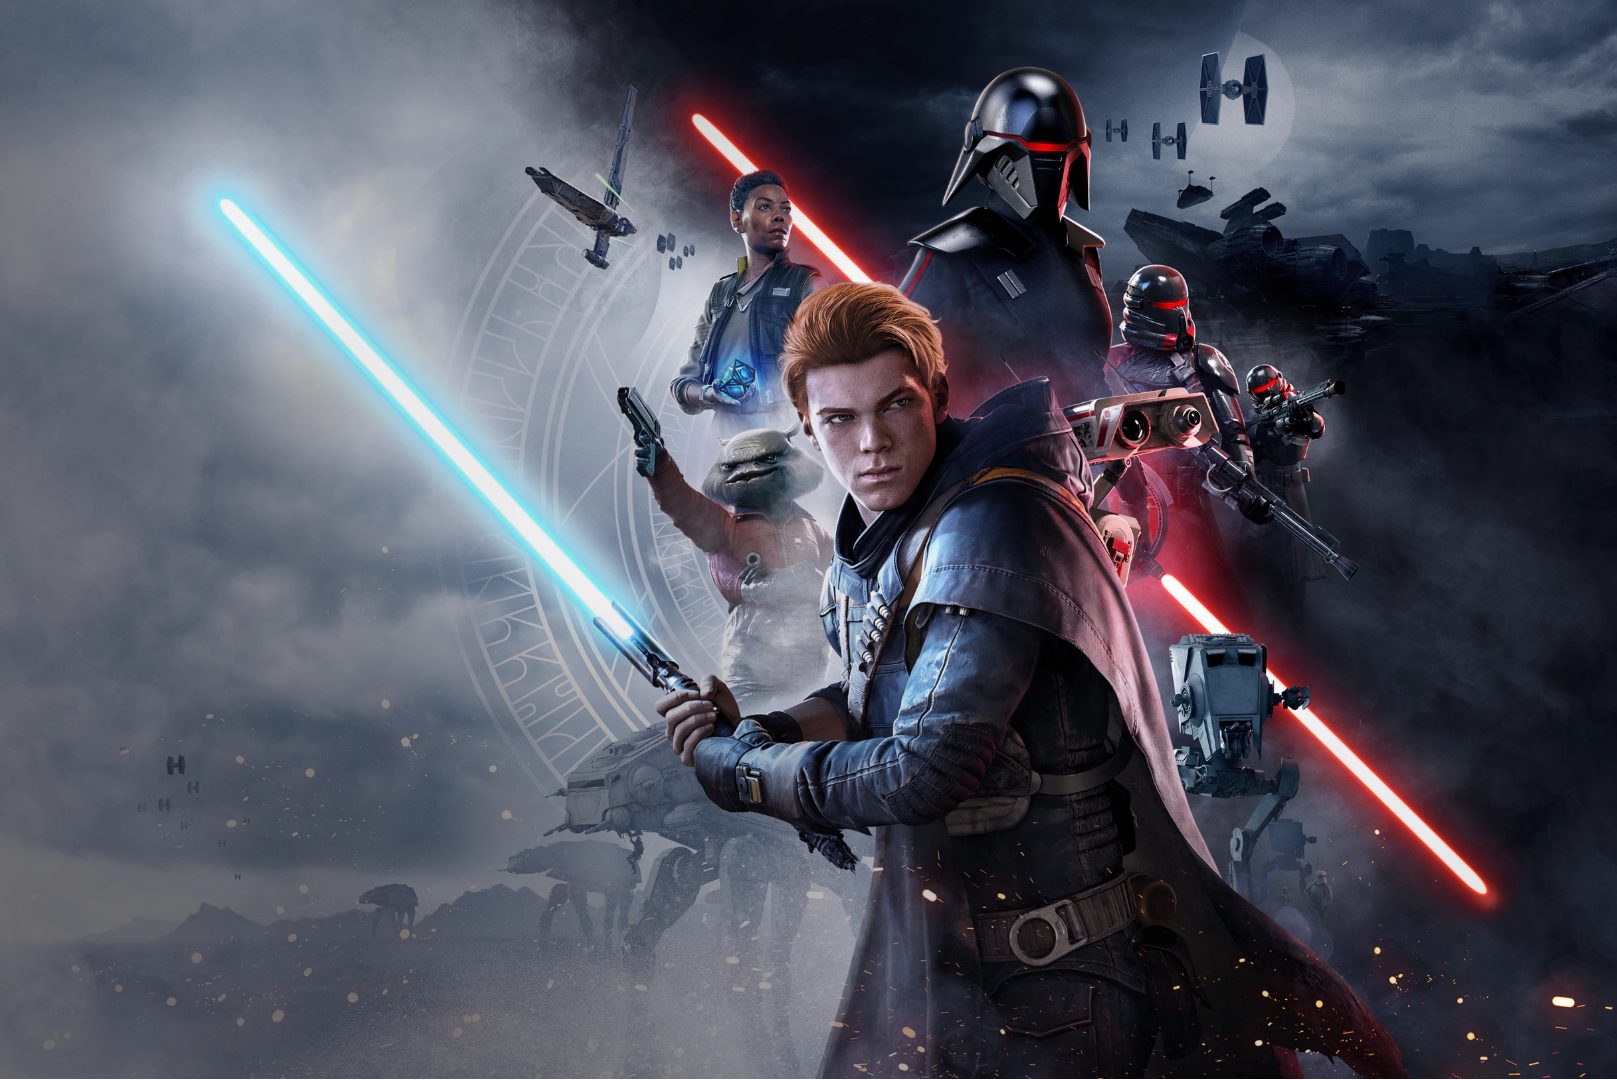 5 Star Wars video games to enjoy if you liked Obi-Wan Kenobi